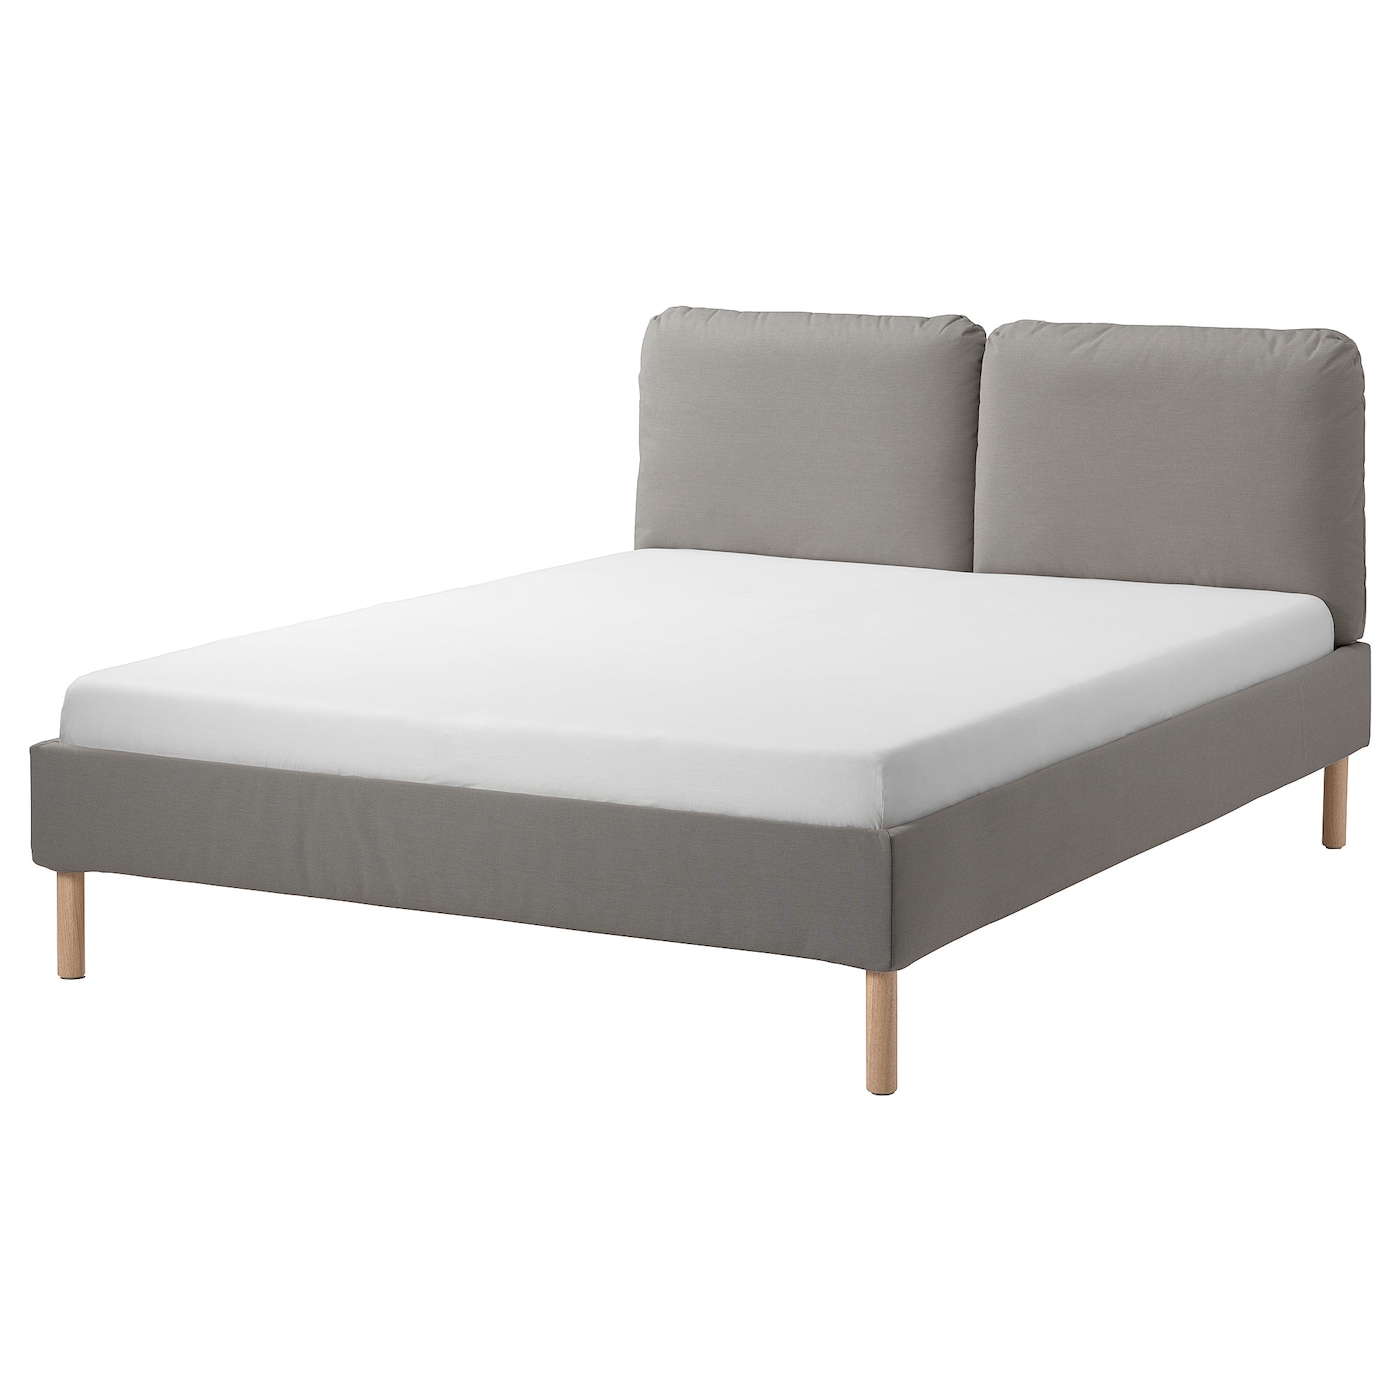 Каркас кровати с обивкой - IKEA SAGESUND, 200х160 см, белый, САГЕСУНД ИКЕА